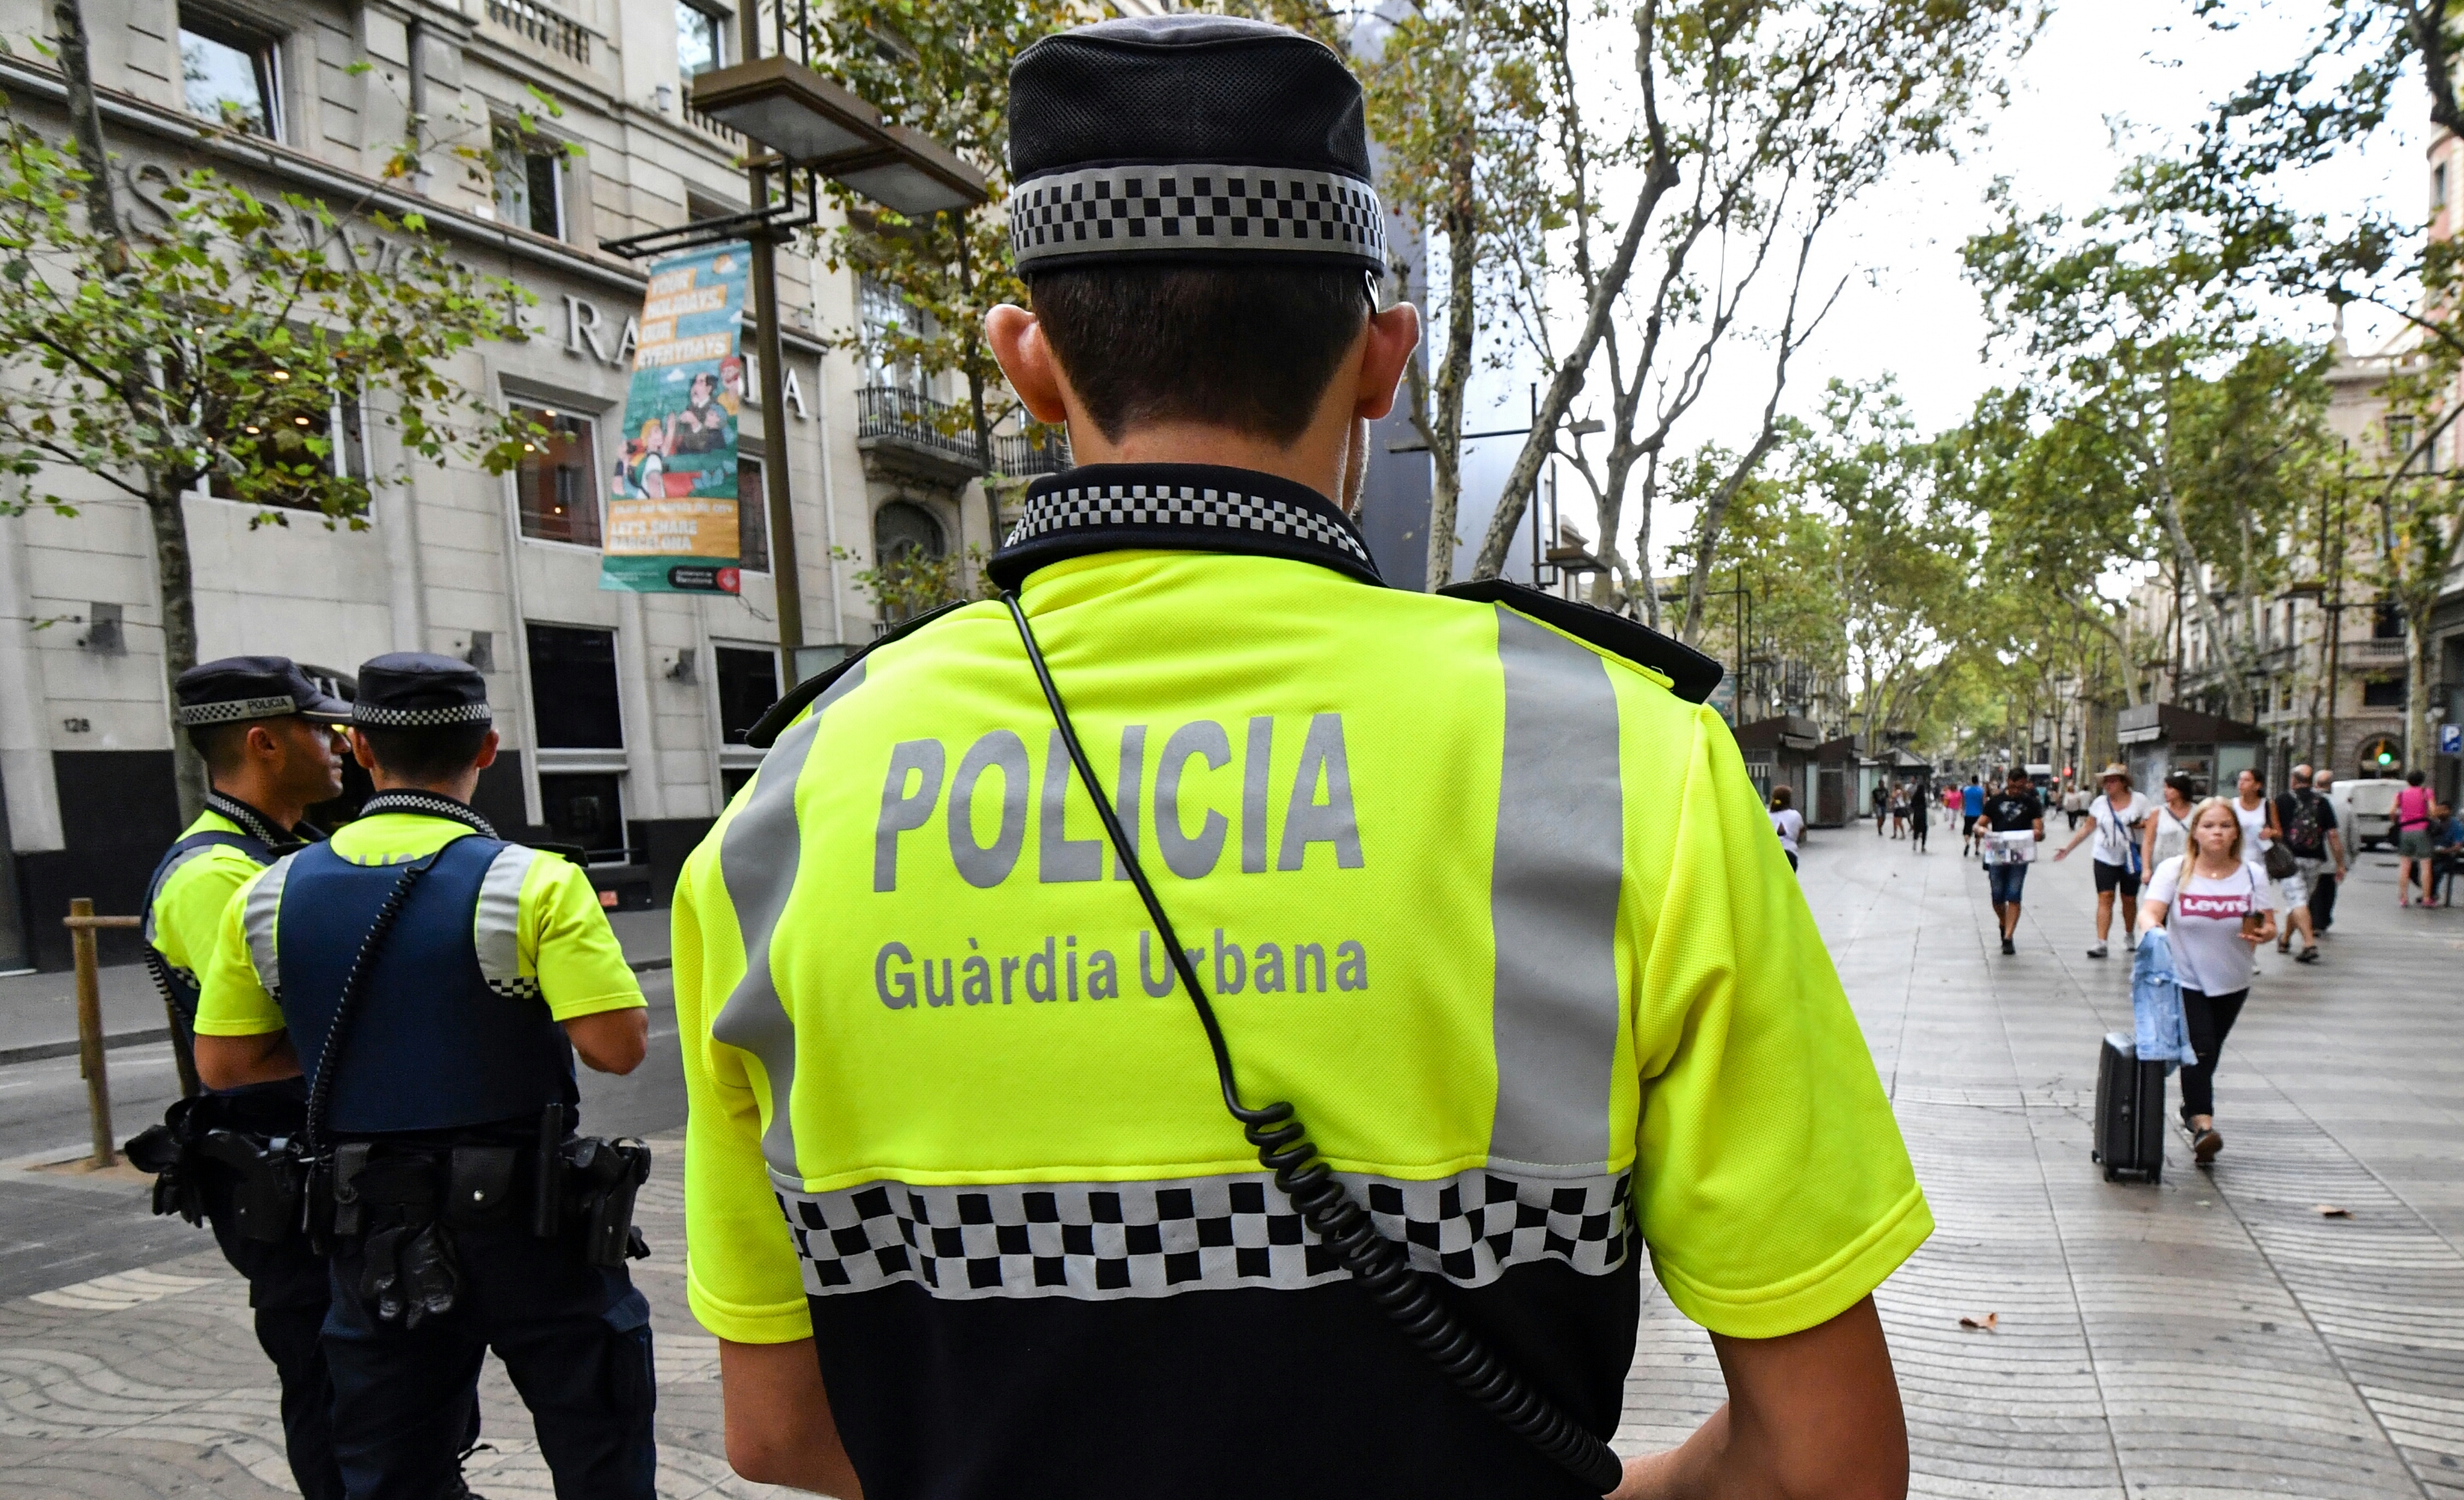 Attentats en Espagne : la cellule jihadiste démantelée